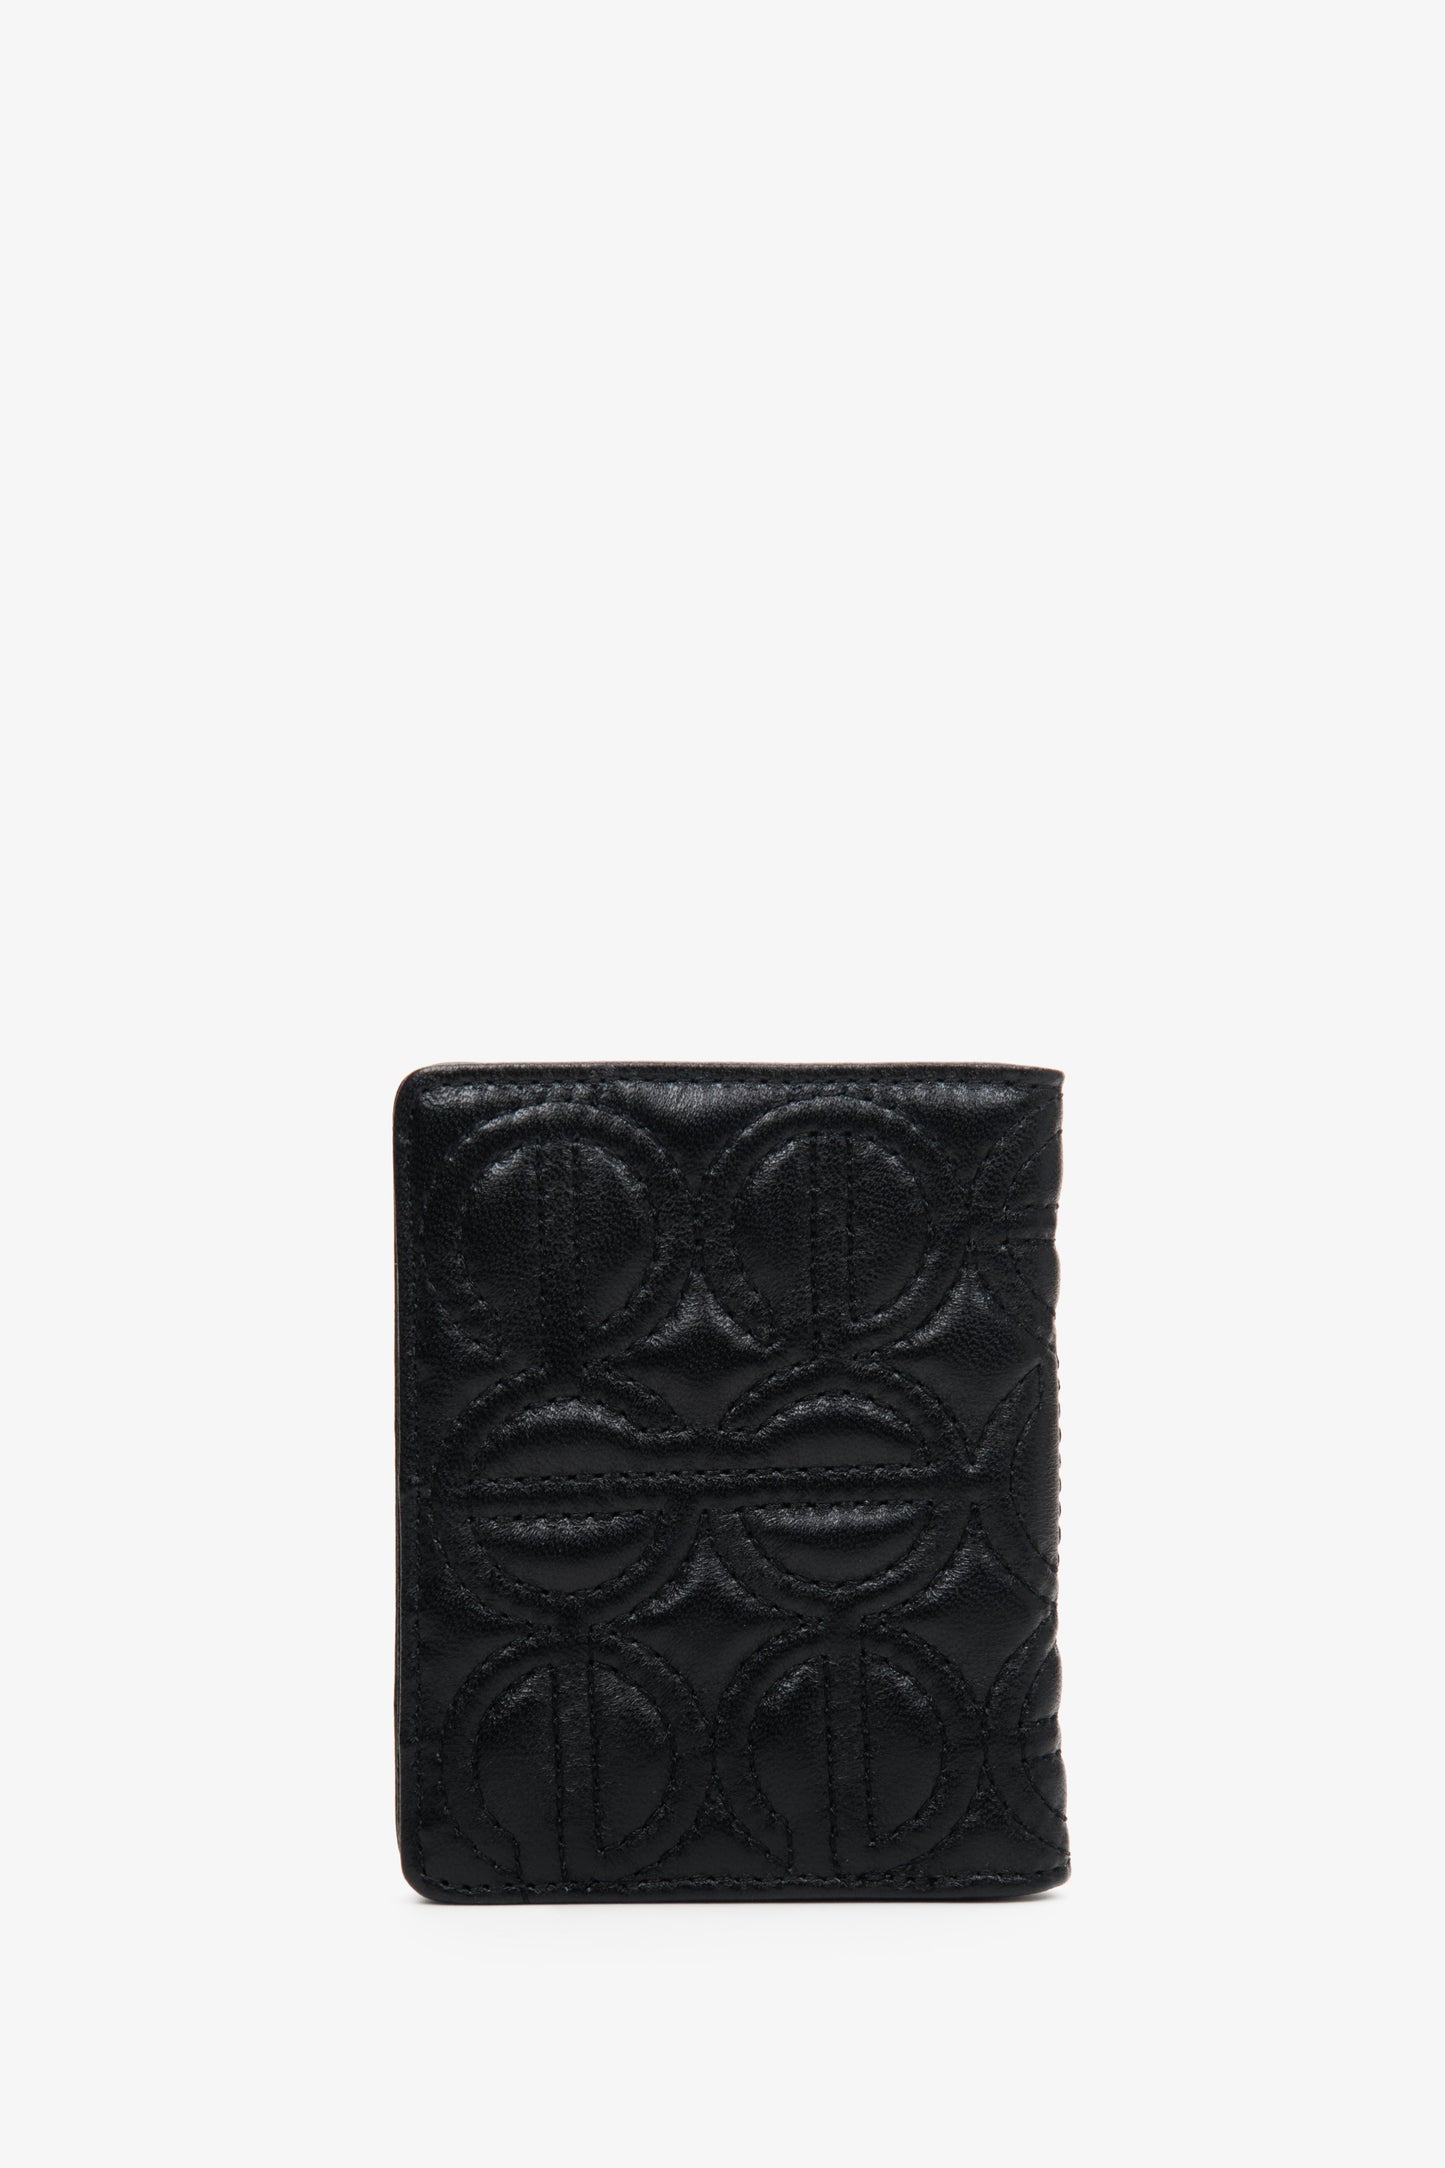 Skórzany, mały portfel damski w kolorze czarnym marki Estro z tłoczonym logo.